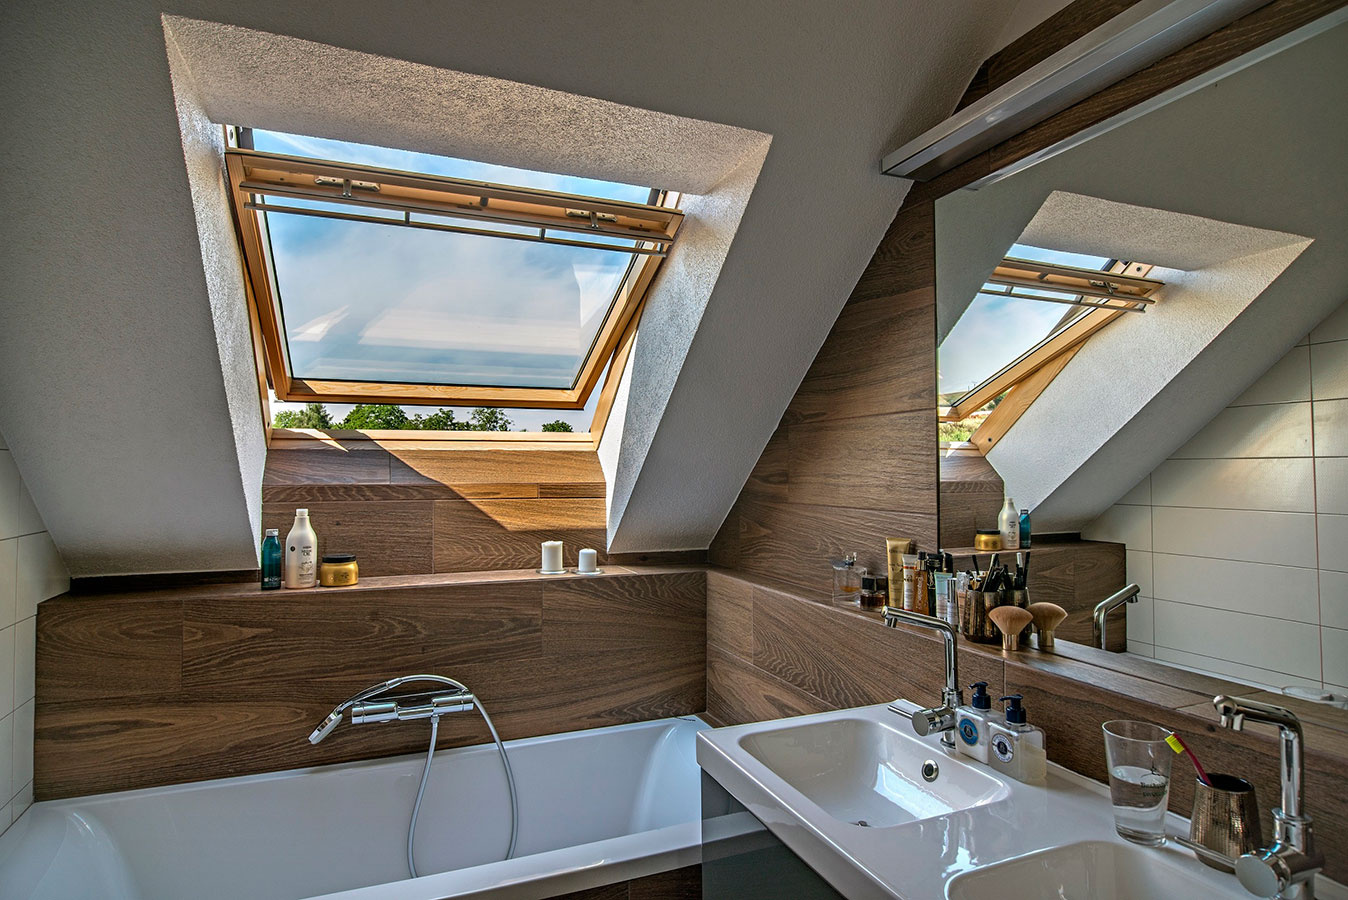 Strešné okno VELUX nad vaňou prispieva k efektívnejšiemu vetraniu v kúpeľni.